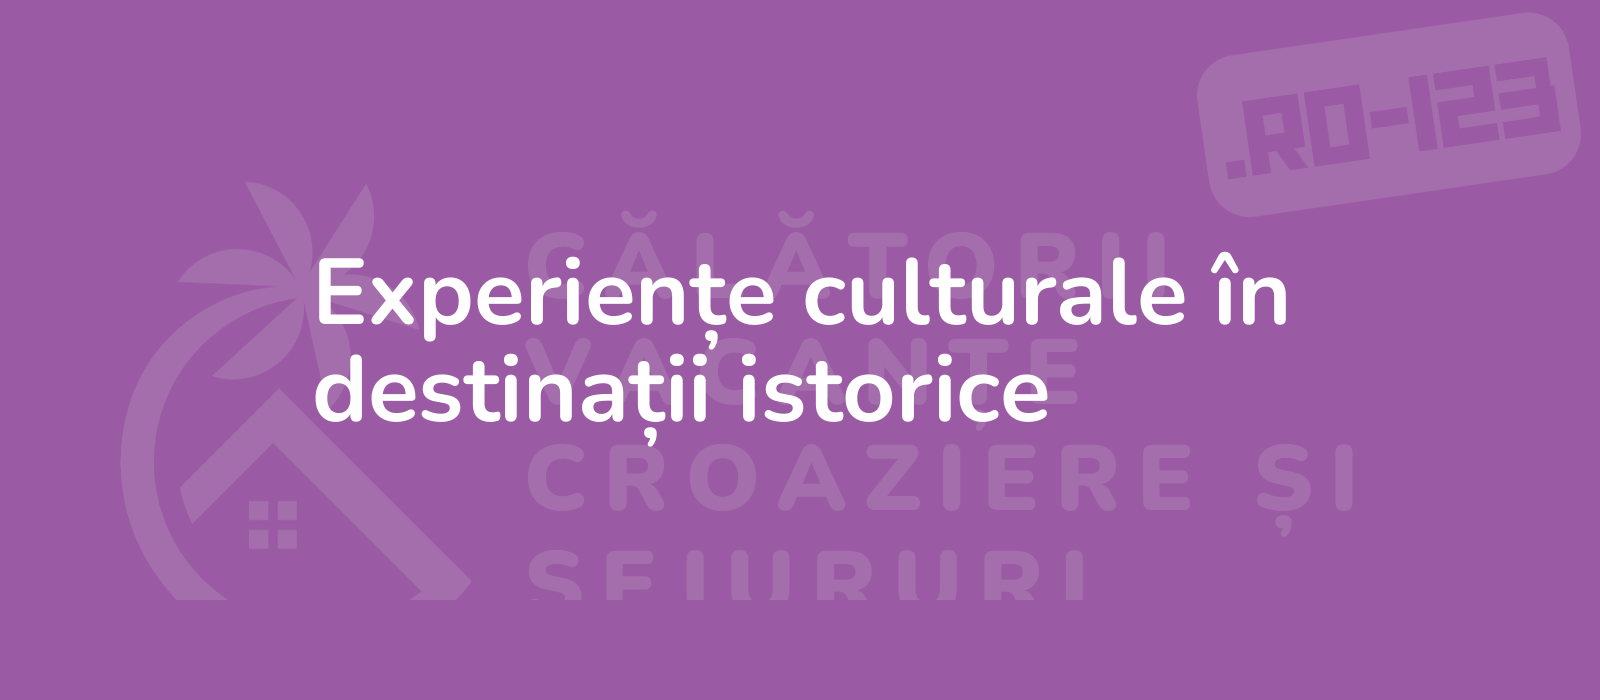 Experiențe culturale în destinații istorice